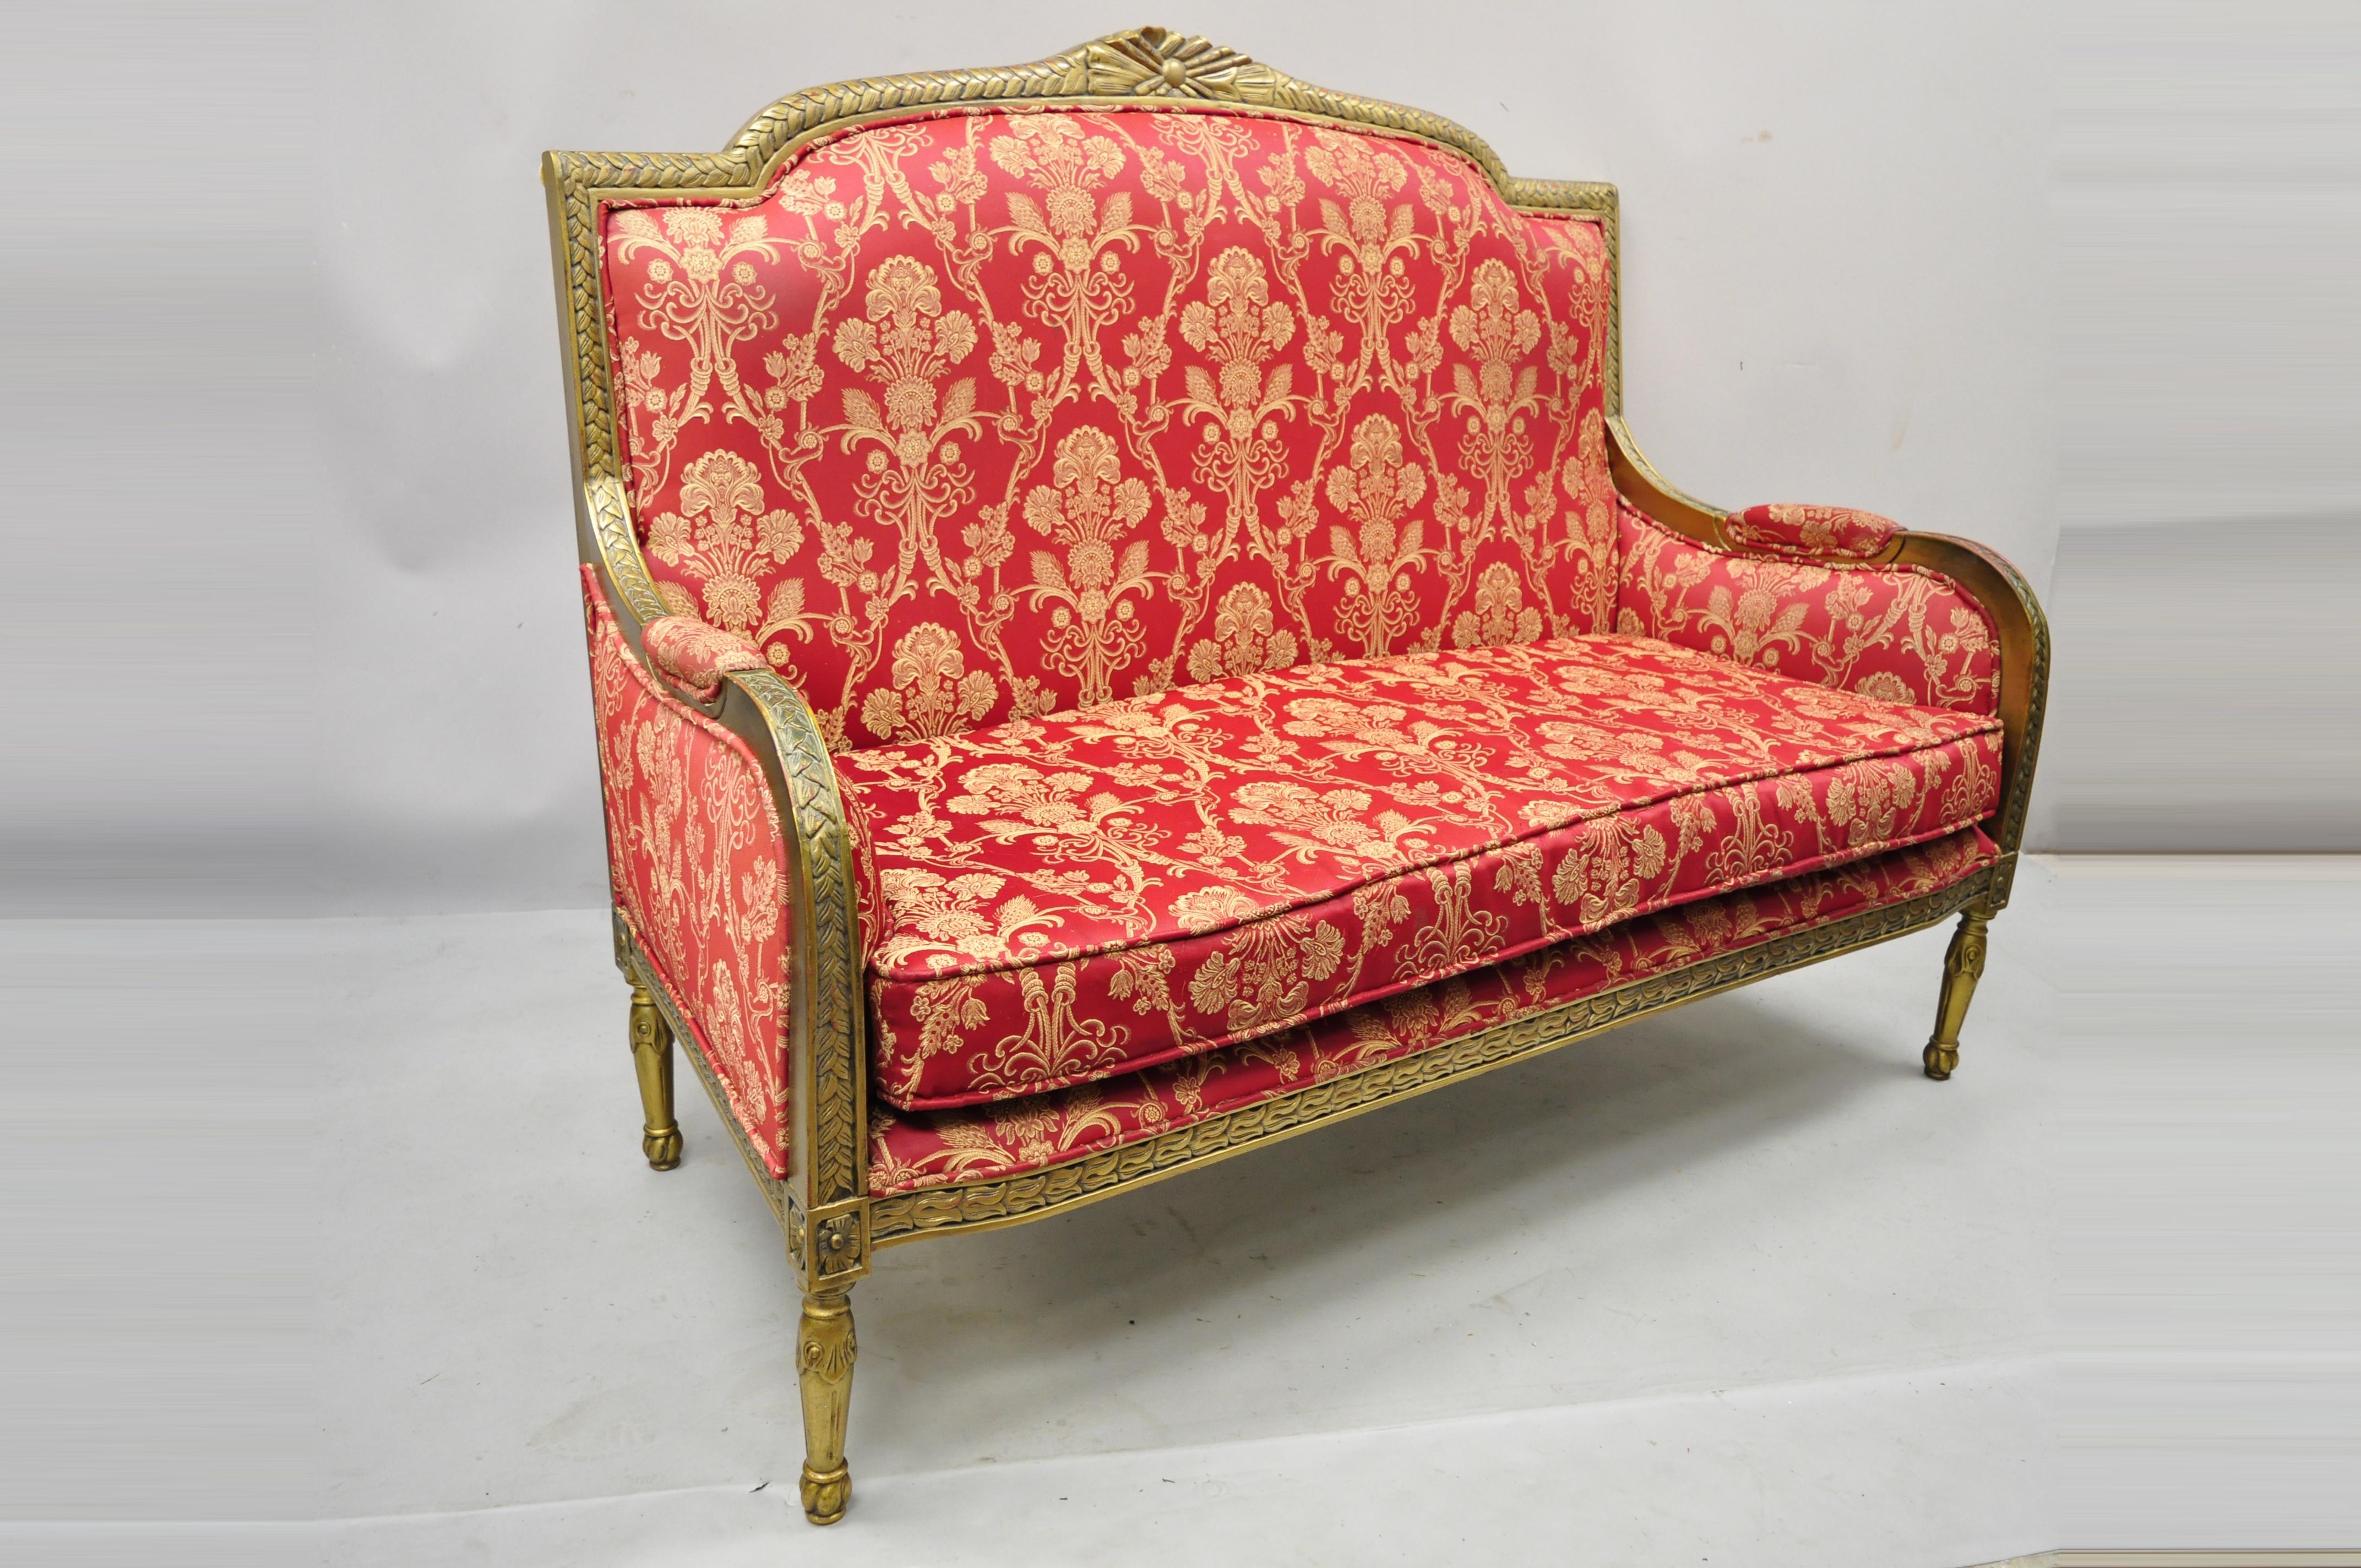 Französisch Louis XVI-Stil Gold gemalt rot gepolstert Sofa Sofa Liegesitz Dekorateur Stuhl. Massivholzrahmen, gepolsterte Armlehnen, goldfarbene Lackierung, hübsch geschnitzte Details, konische Beine, großer Stil und Form. Etwa Ende des 20.